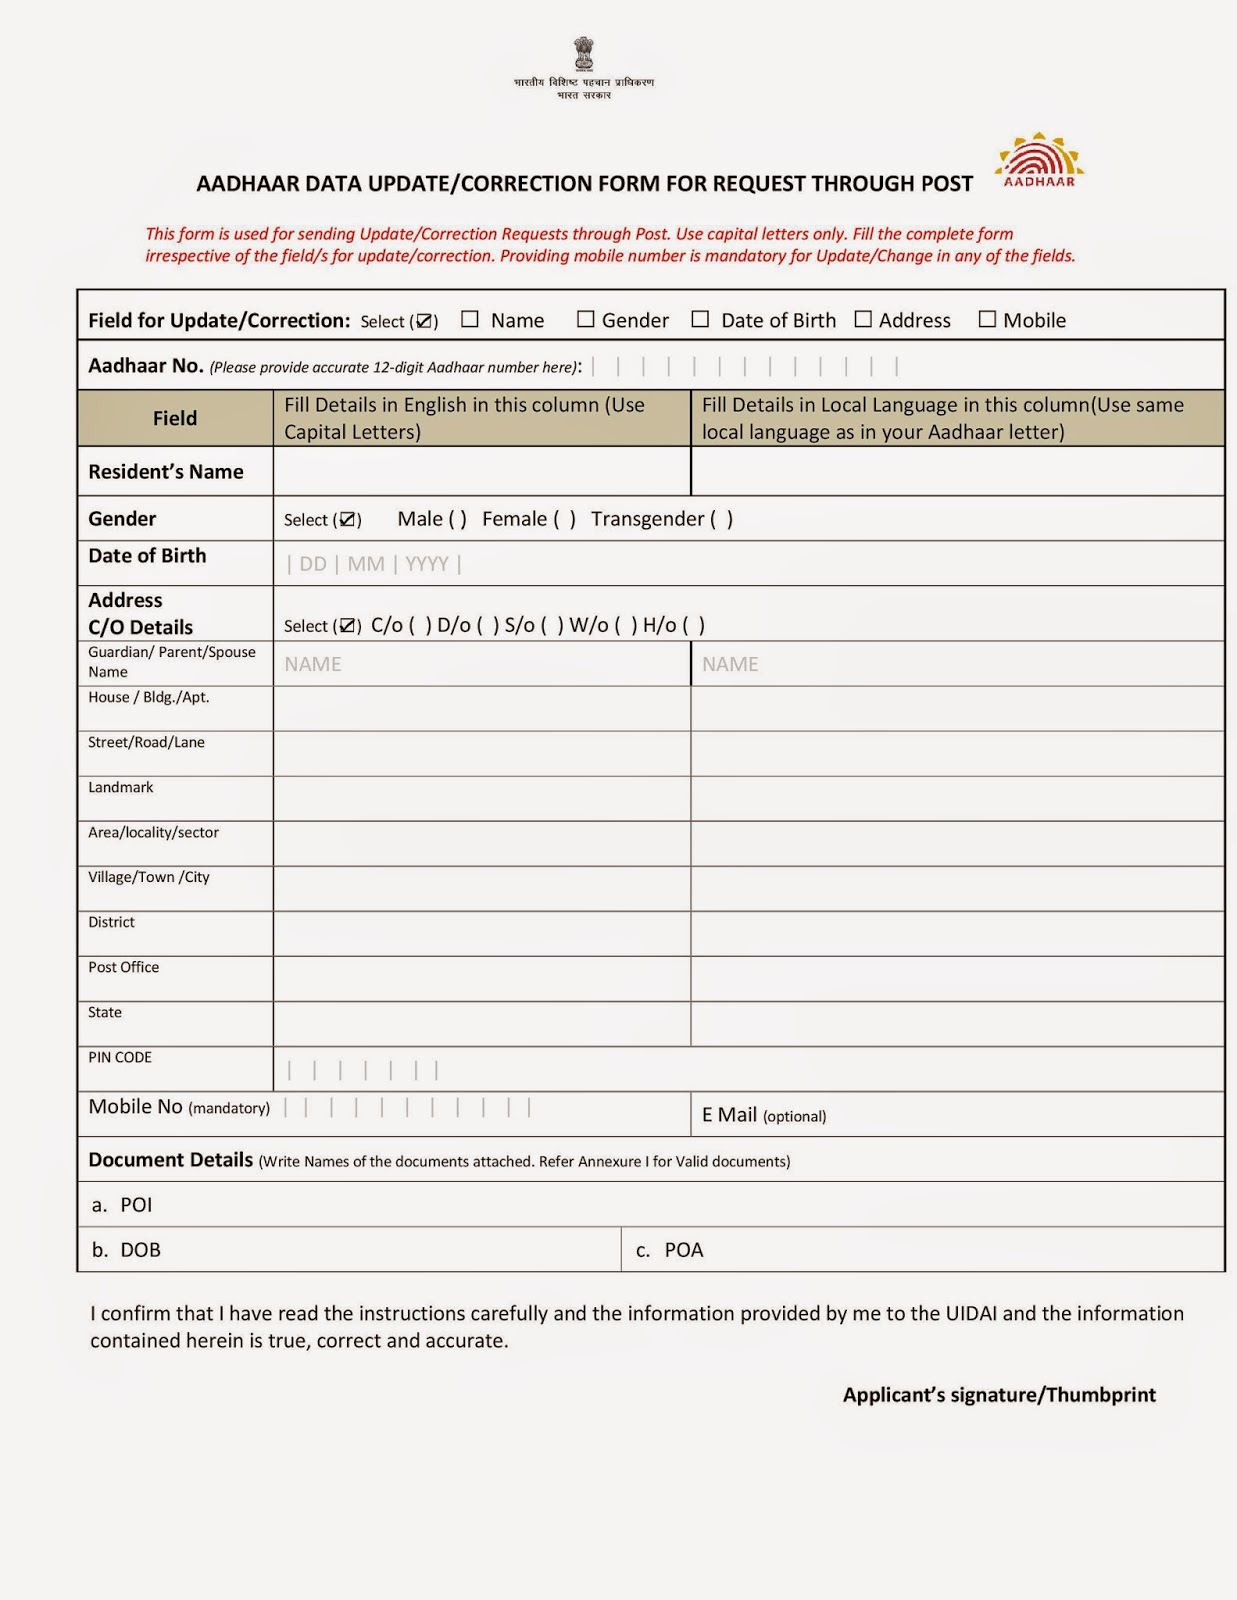 Aadhaar Update/Correction Form